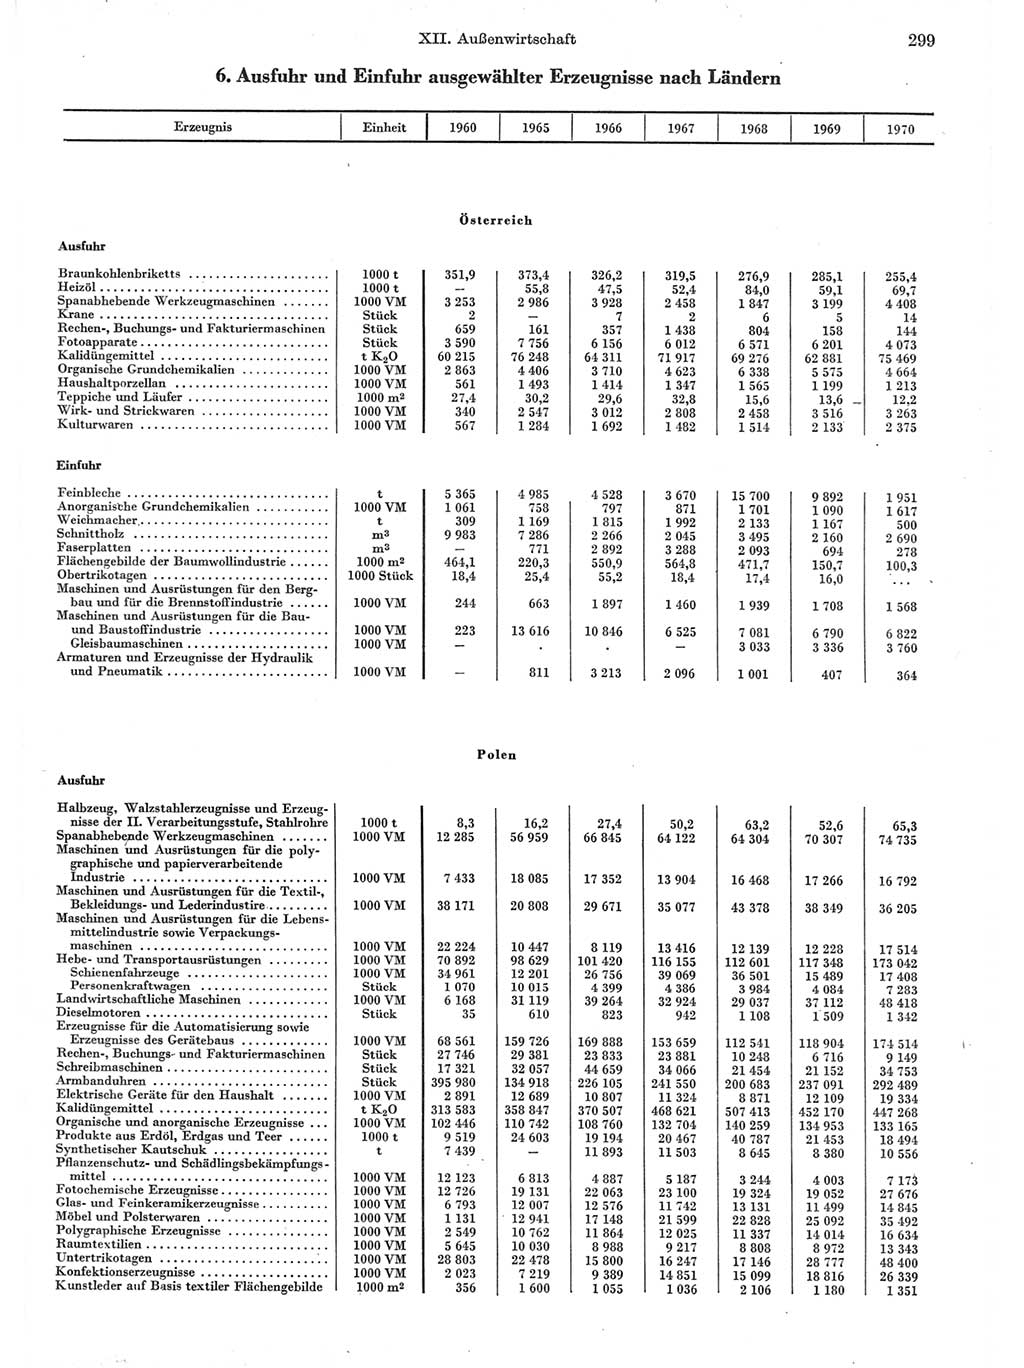 Statistisches Jahrbuch der Deutschen Demokratischen Republik (DDR) 1971, Seite 299 (Stat. Jb. DDR 1971, S. 299)